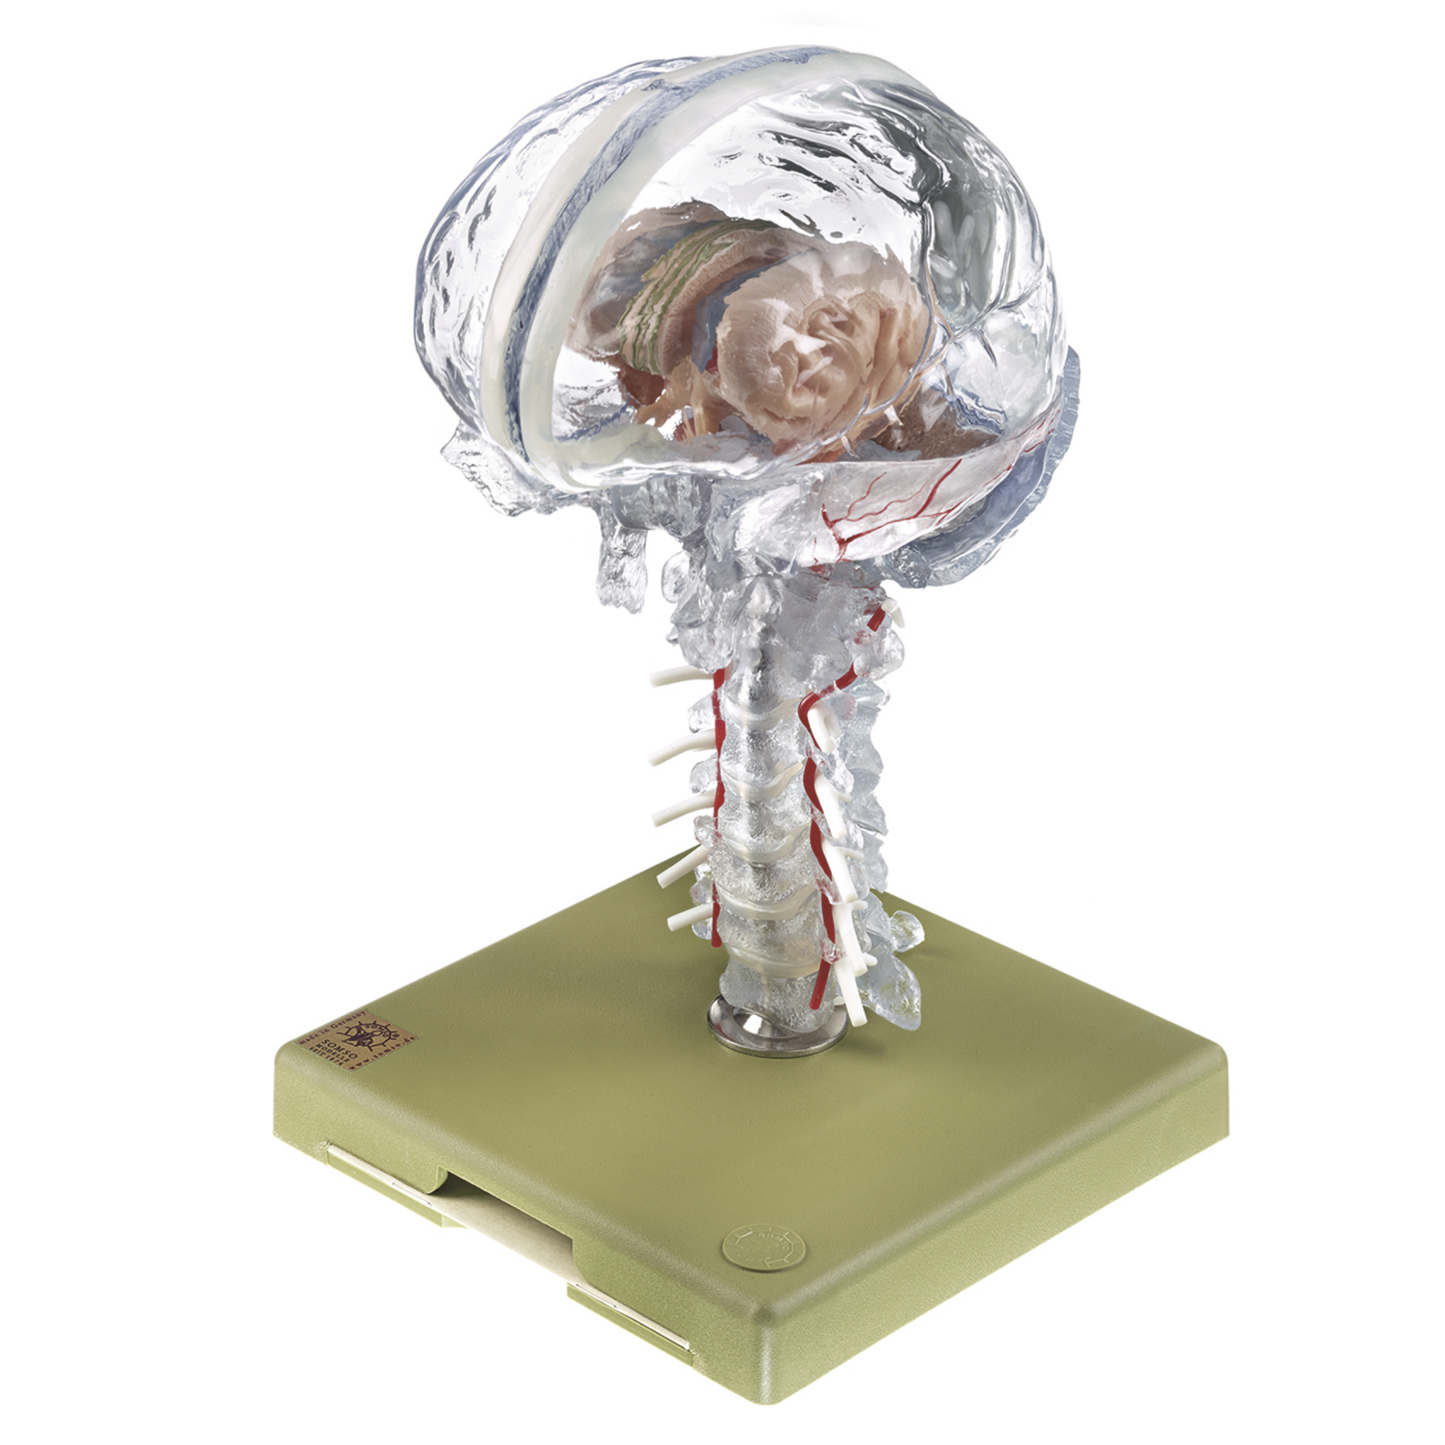 Hjernemodel i højeste kvalitet og med fokus på hjernens indre strukturer. Kan adskilles i 15 dele